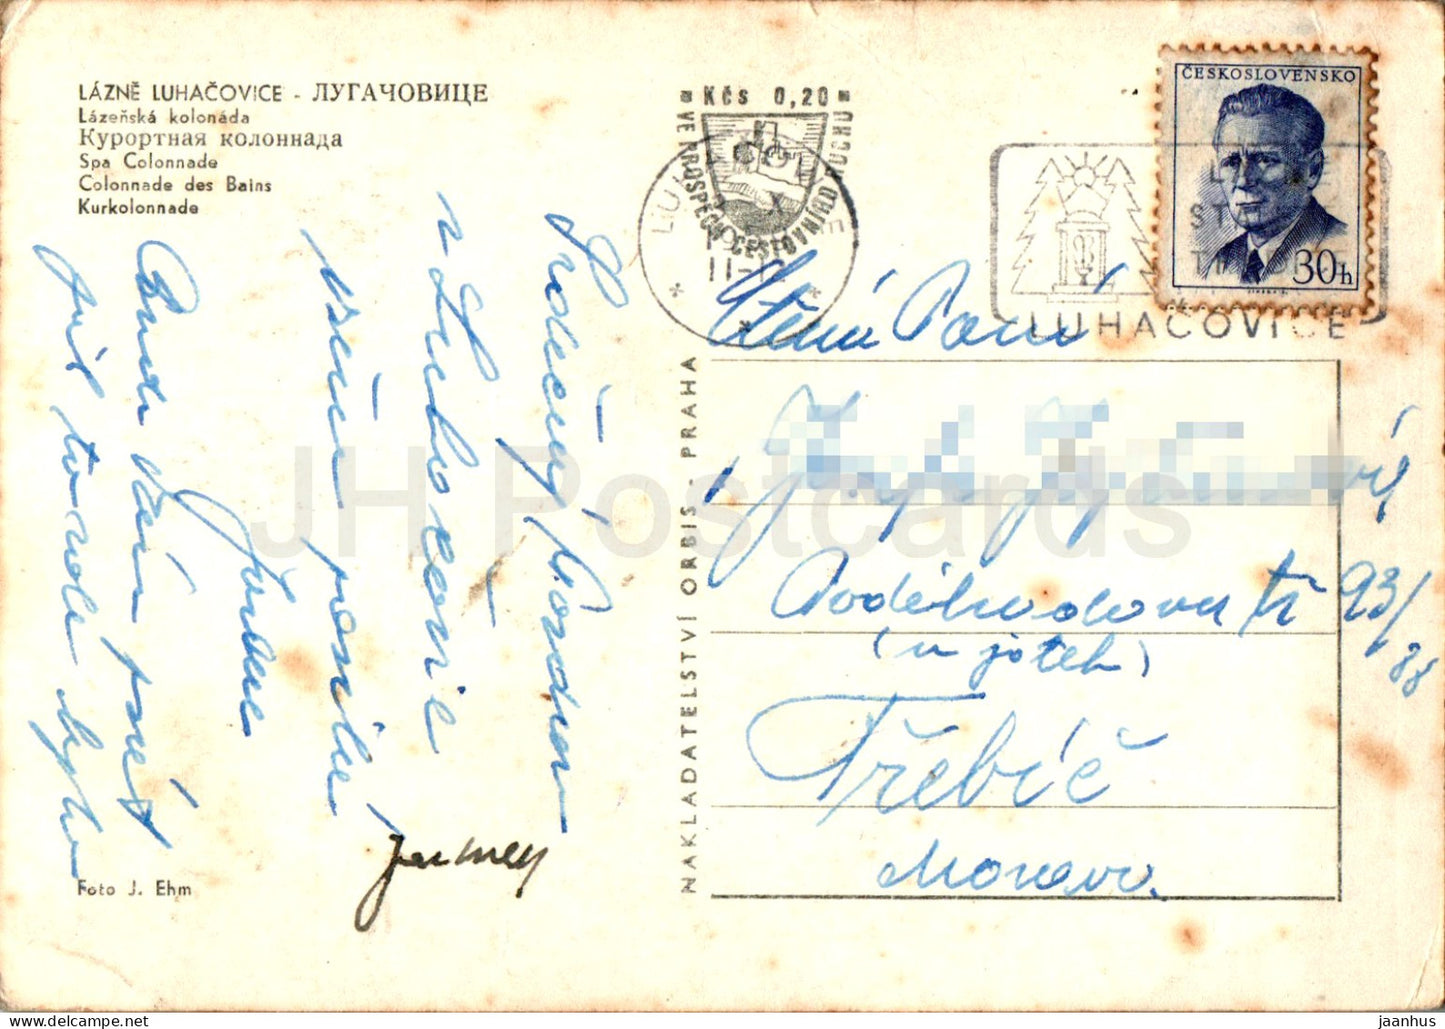 Lazne Luhacovice - Lazenska kolonada - Spa Colonnade - carte postale ancienne - 1959 - République tchèque - Tchécoslovaquie - utilisé